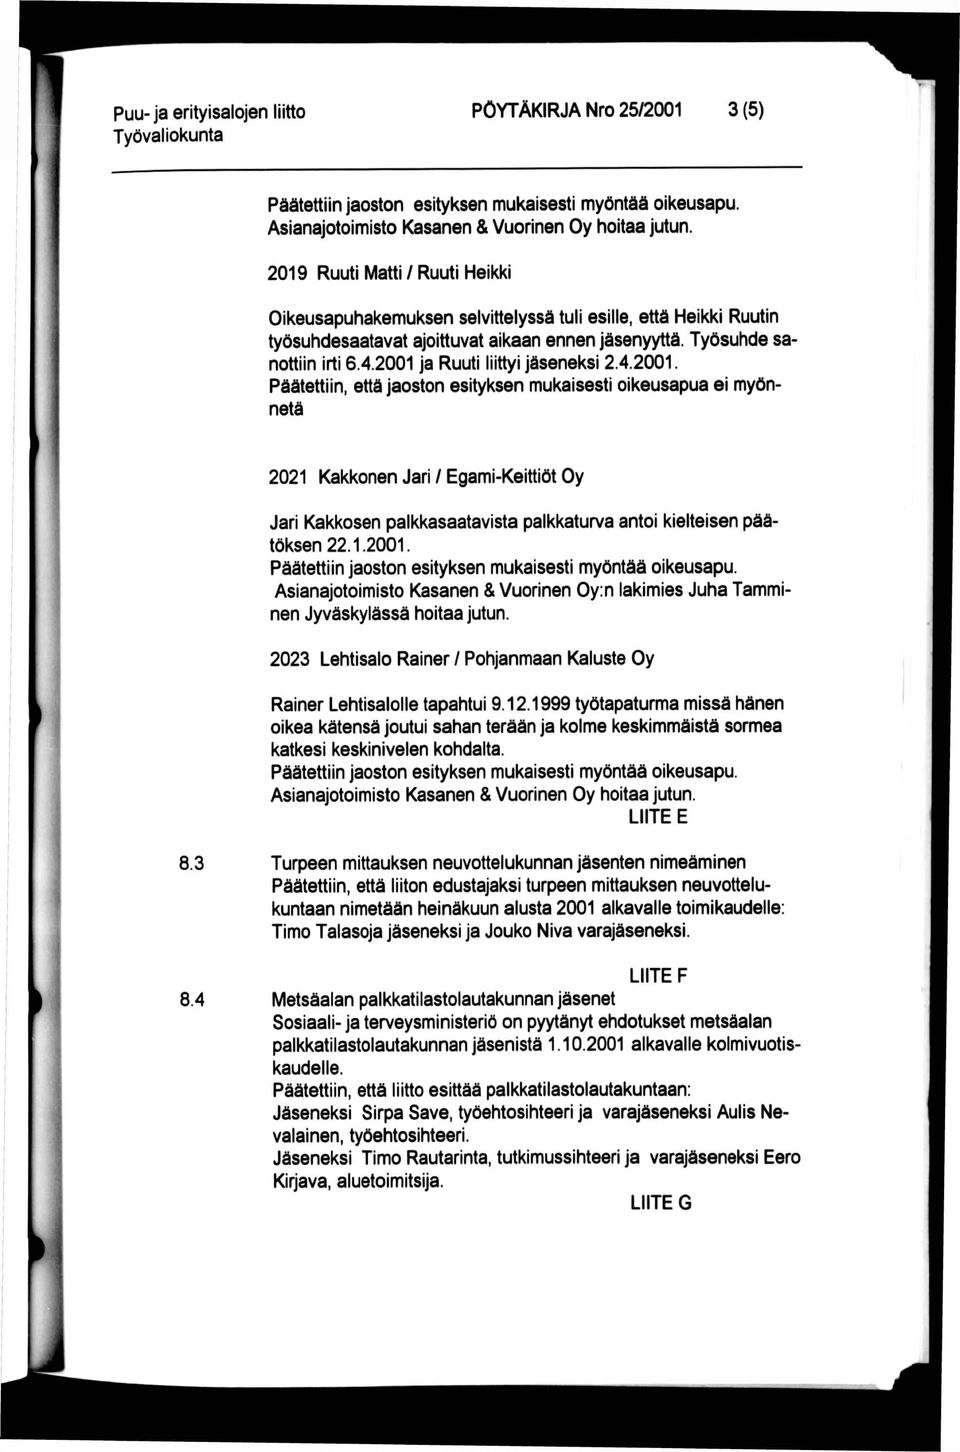 2001 ja Ruuti liittyi jäseneksi 2.4.2001. Päätettiin, että jaoston esityksen mukaisesti oikeusapua ei myönnetä 2021 Kakkonen Jarl / Egami-Keittiöt Oy Jari Kakkosen palkkasaatavista palkkaturva antoi kielteisen päätöksen 22.